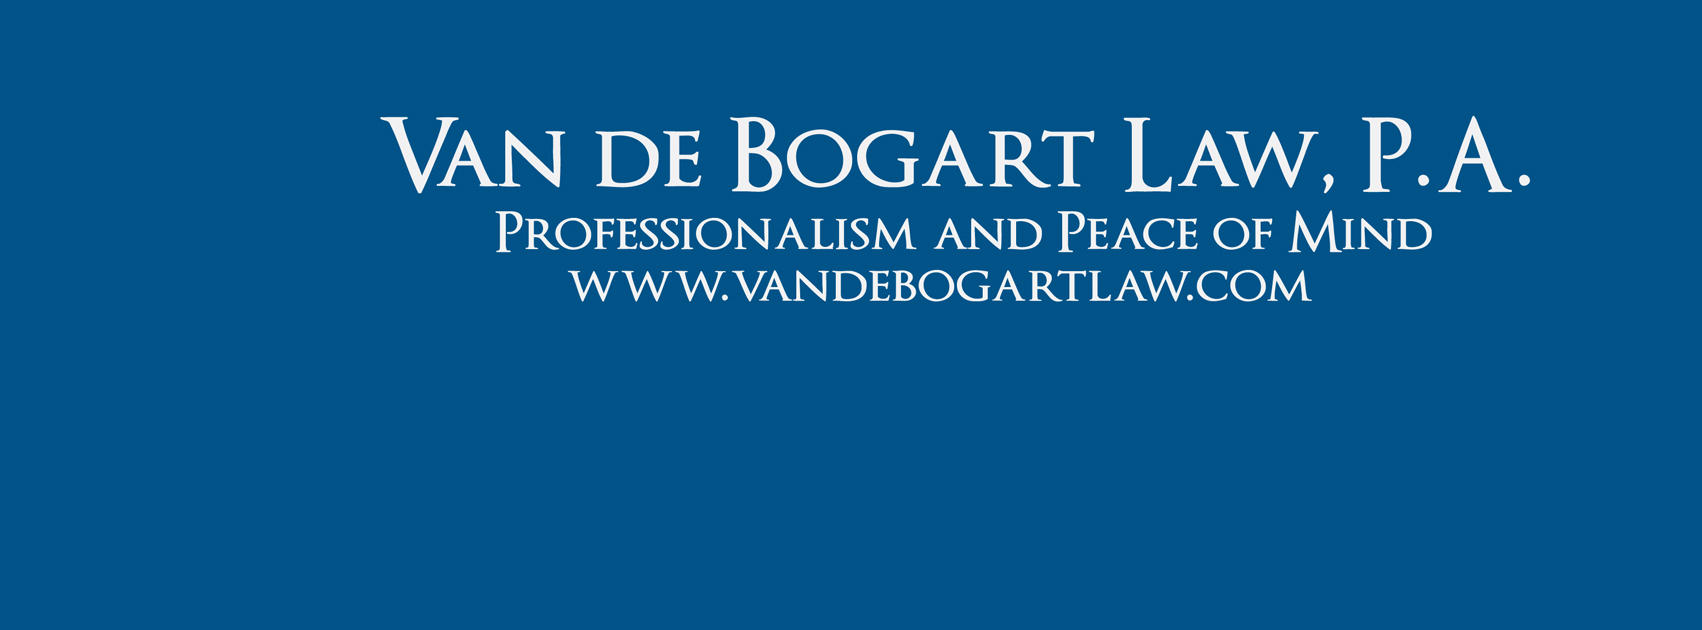 Van de Bogart Law, P.A. Photo